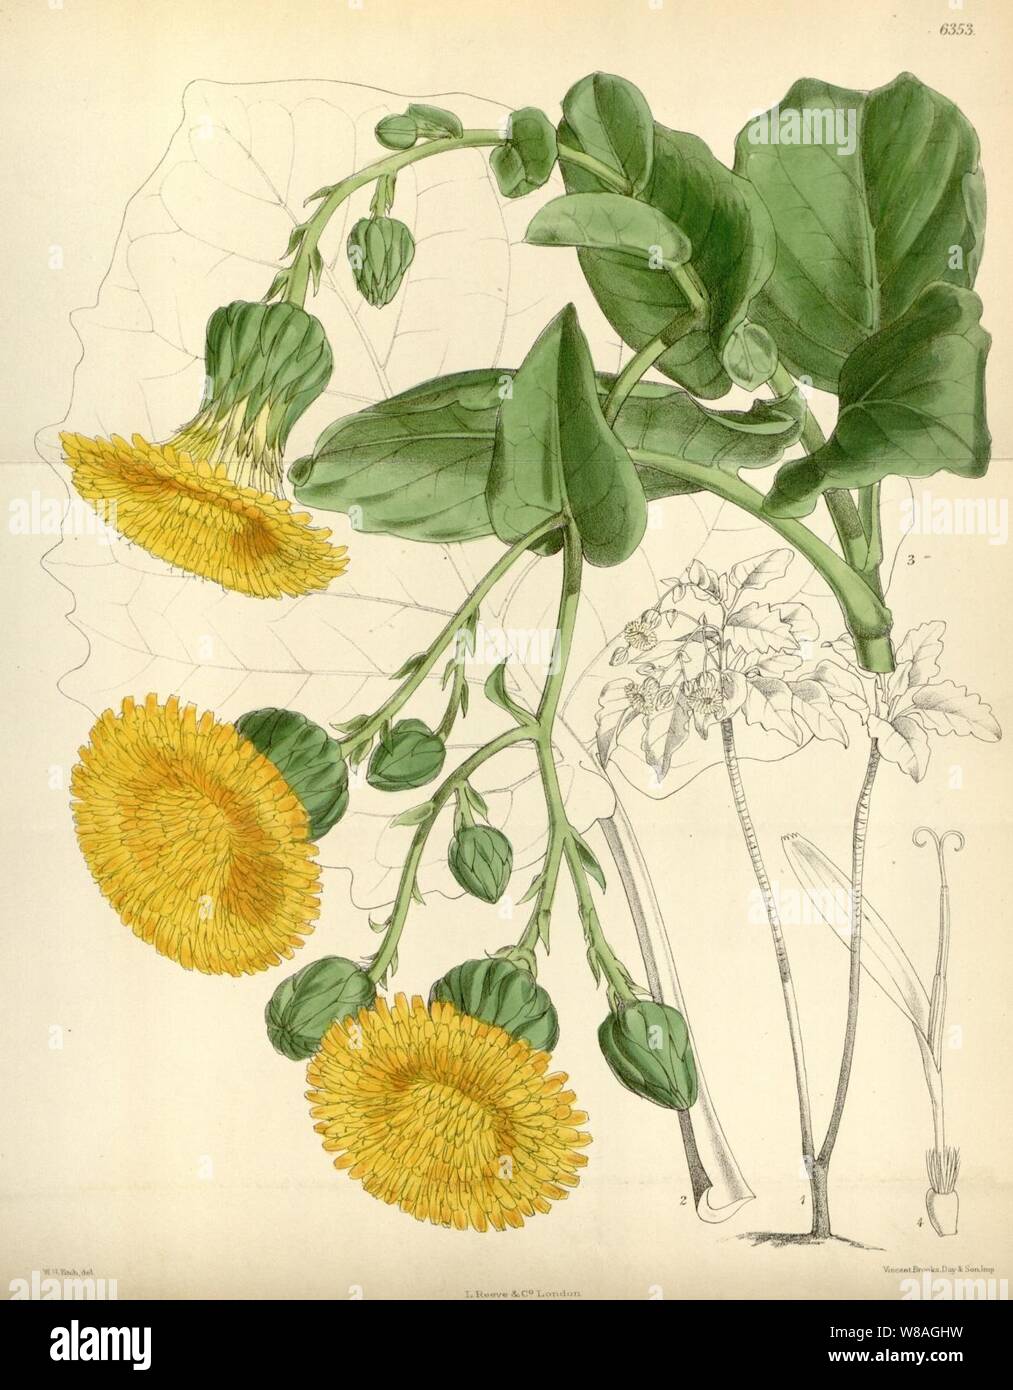 Dendroseris macrophylla - Curtis's Bot. Mag., tab 6353. Stock Photo